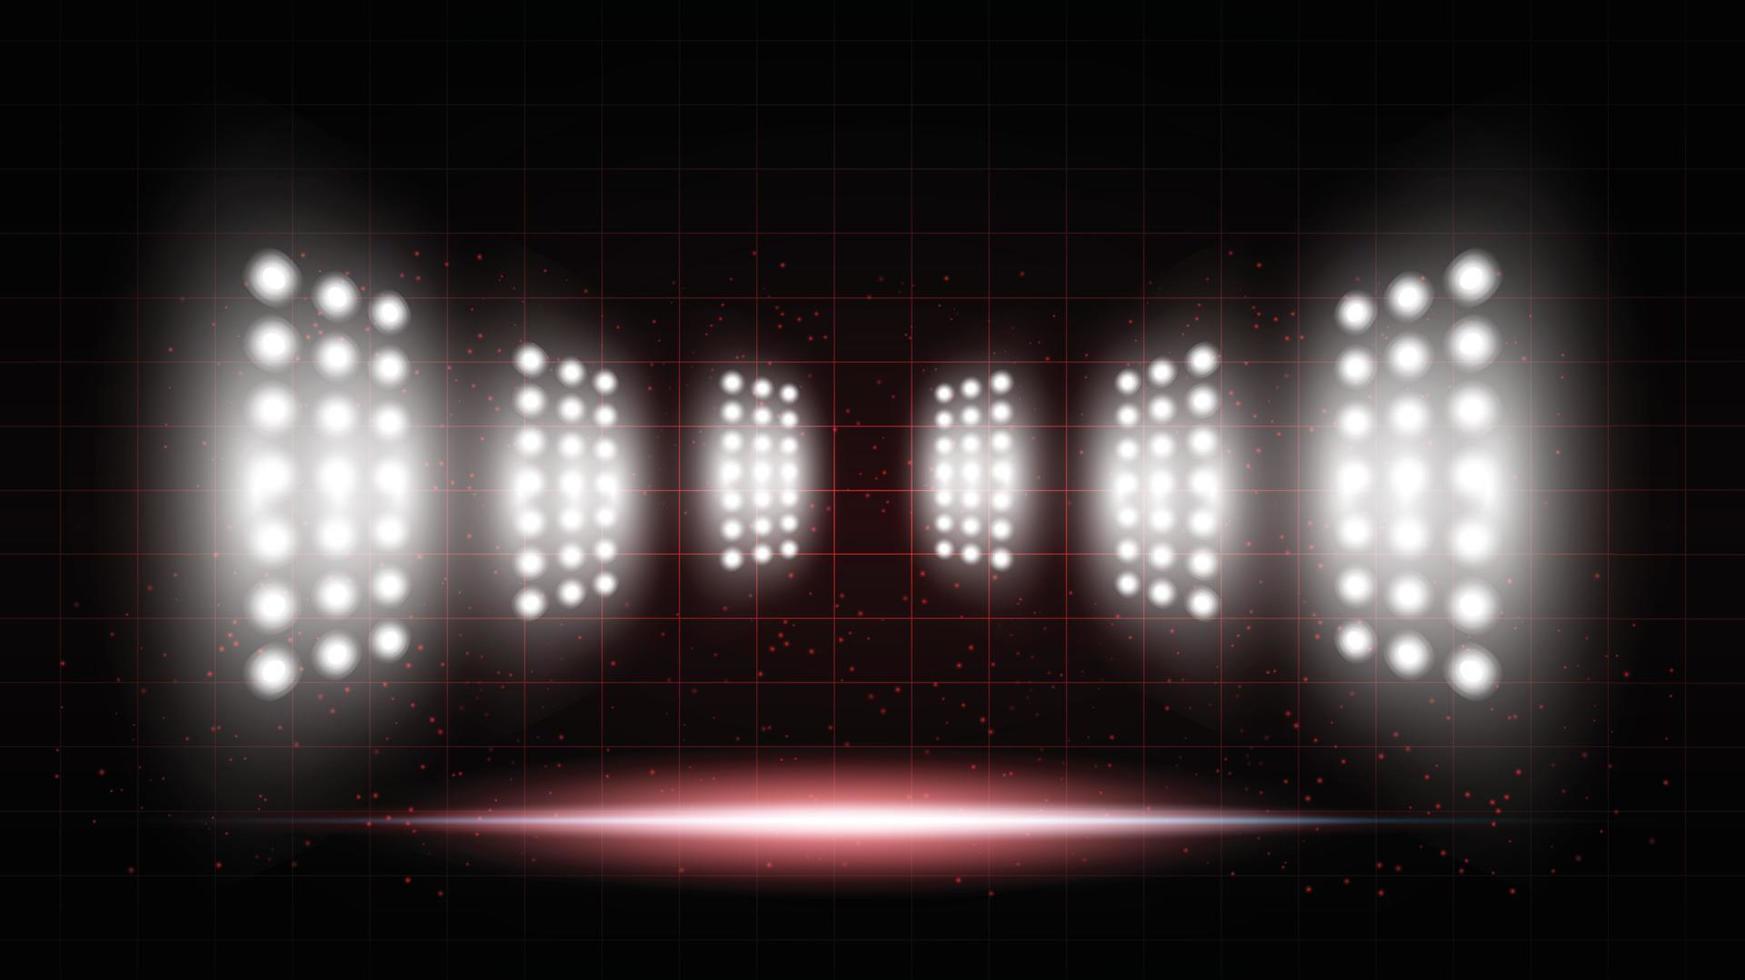 fundo vermelho abstrato salão de palco estádio com luzes cênicas de interface de usuário de tecnologia futurista rodada azul iluminação de fundo de holofotes de palco vazio. vetor